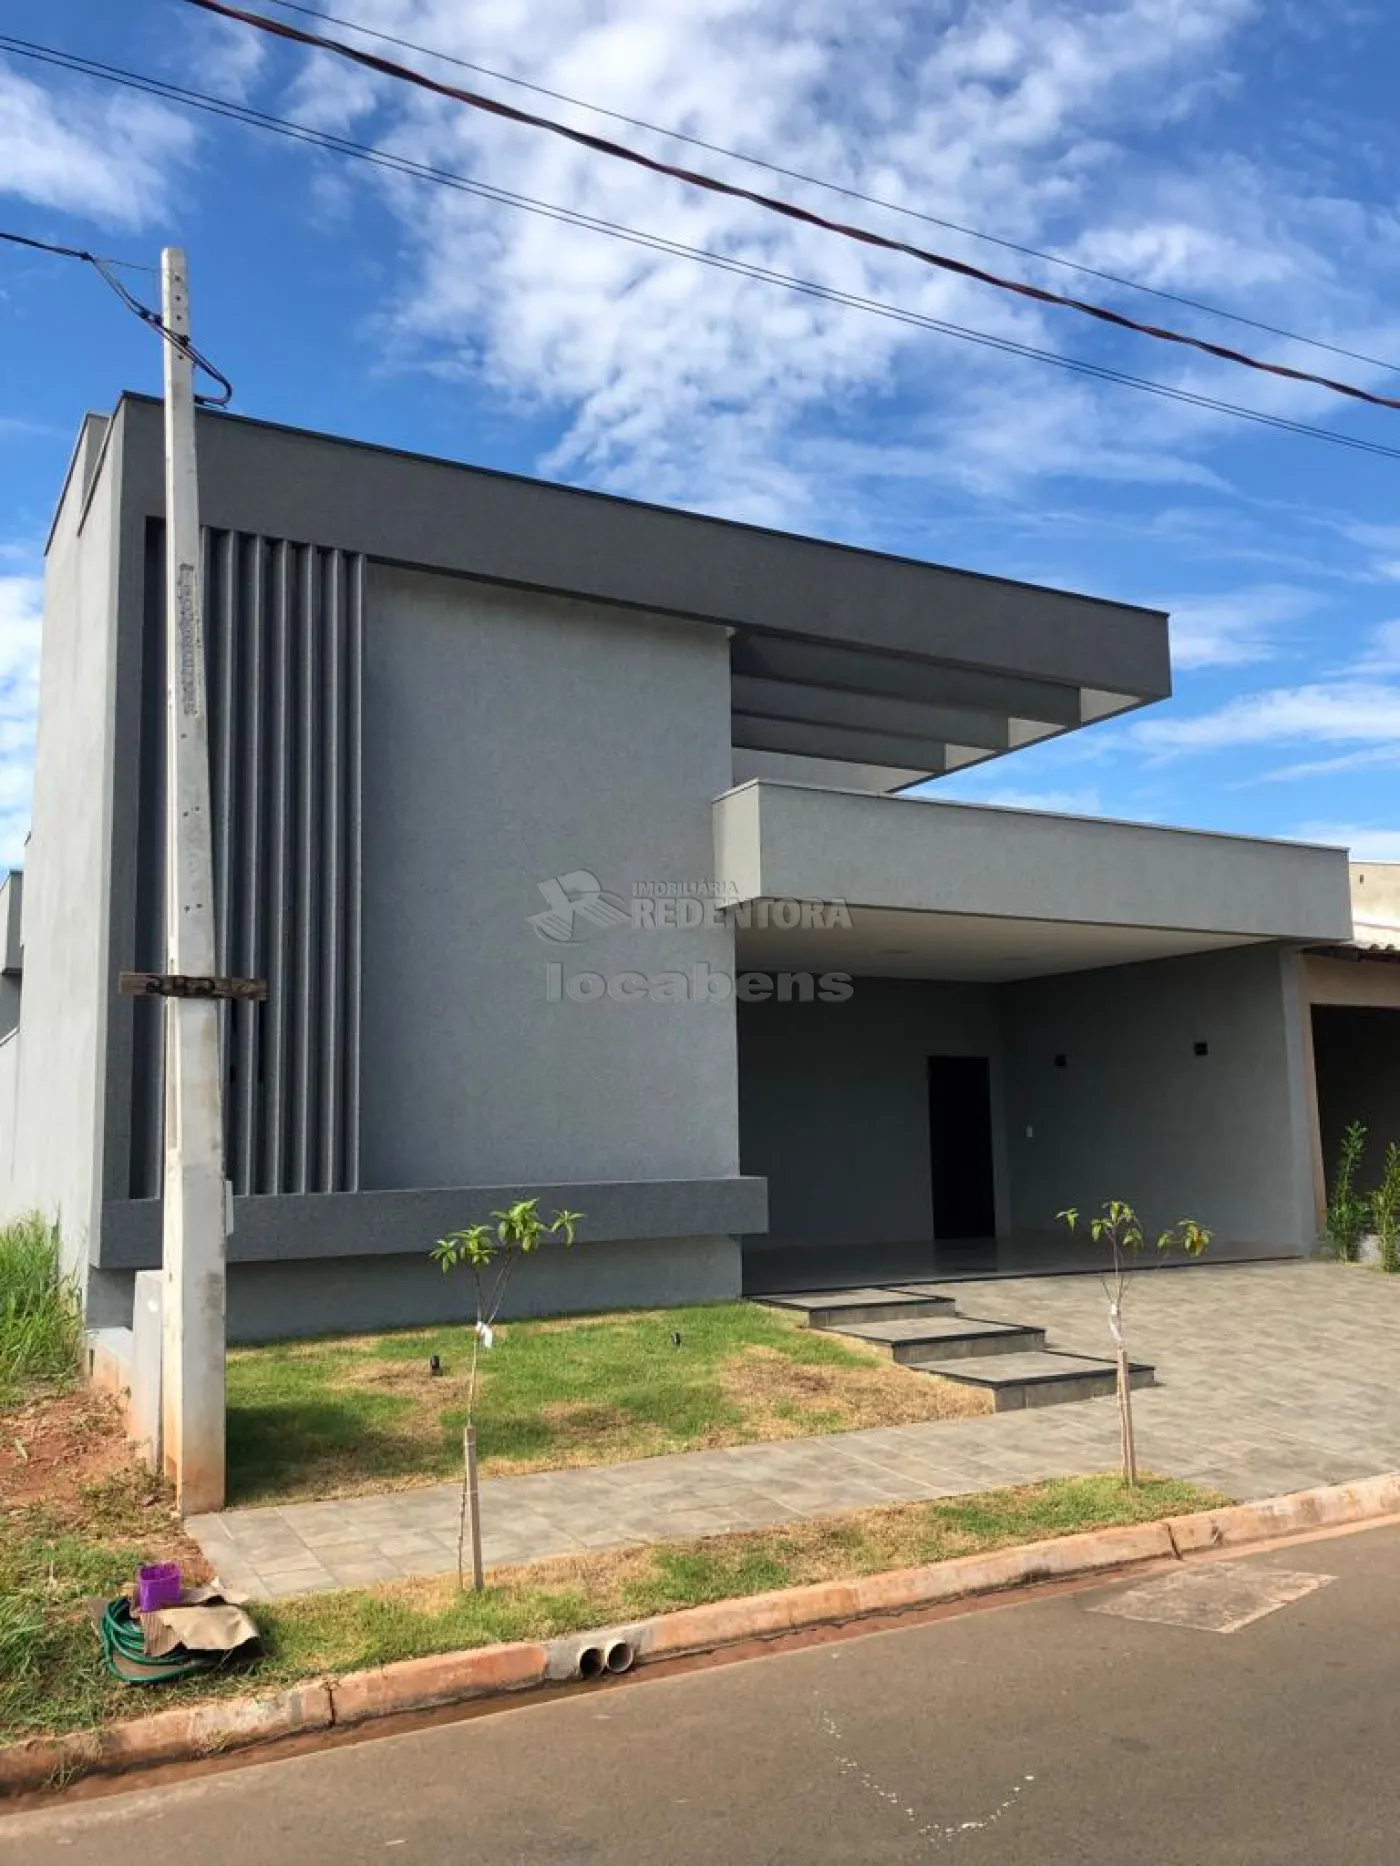 Comprar Casa / Condomínio em Mirassol apenas R$ 950.000,00 - Foto 1